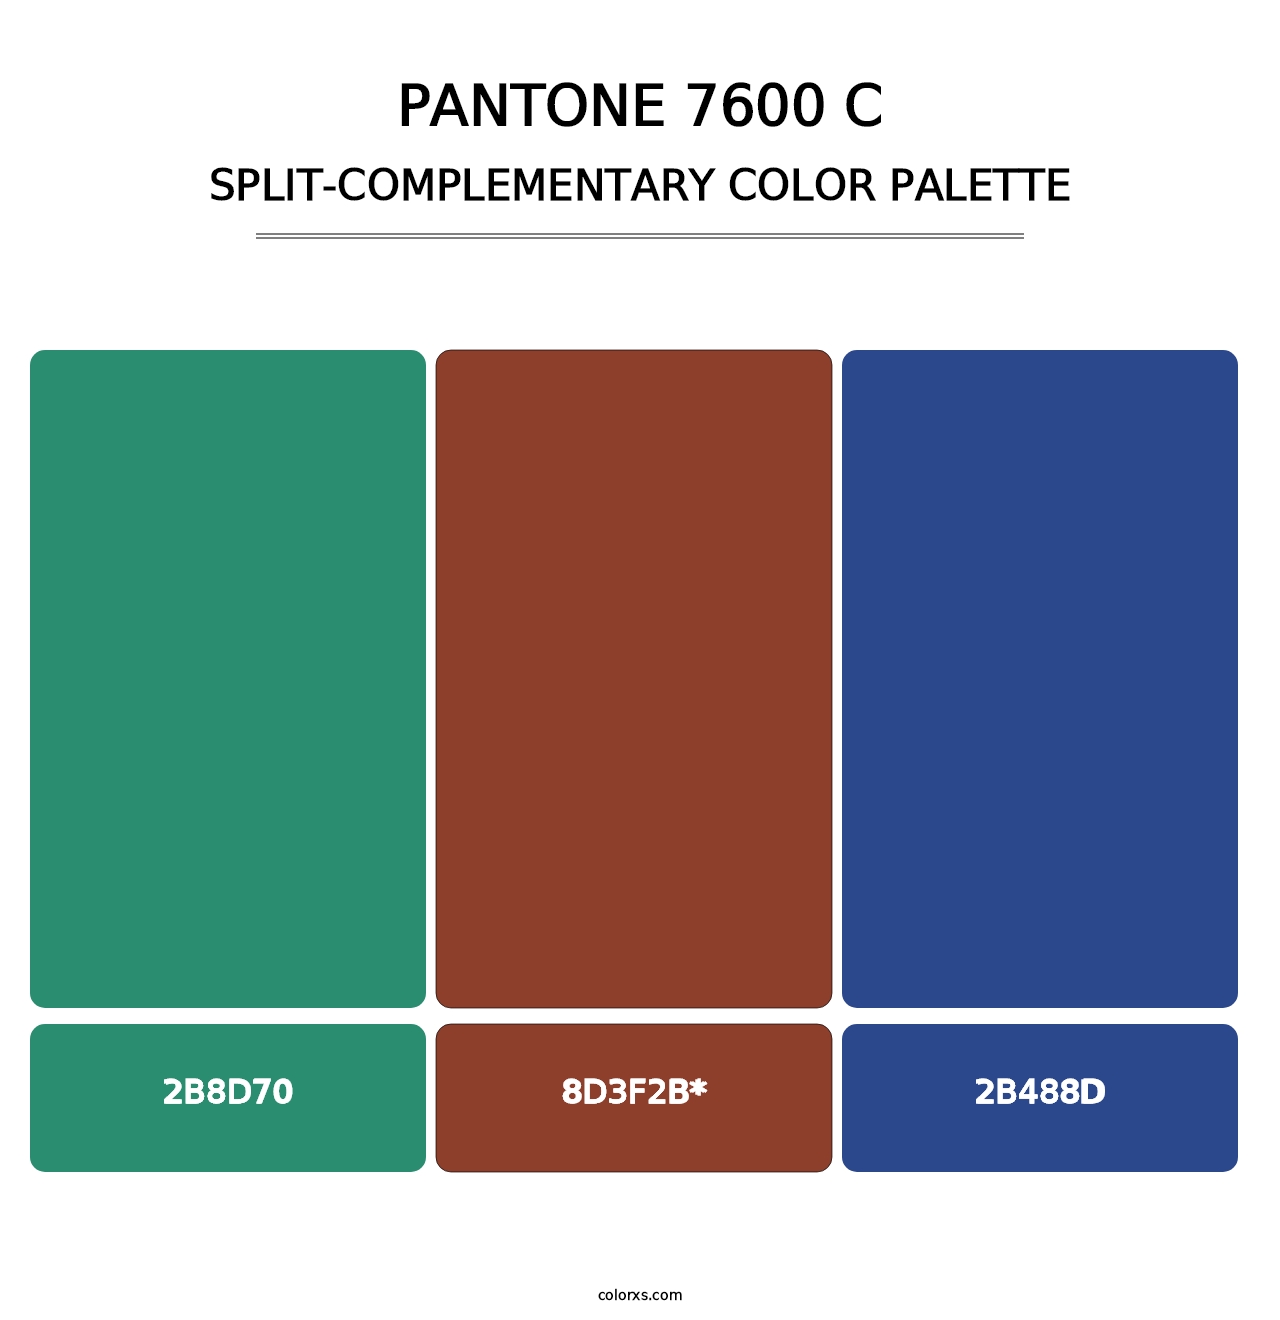 PANTONE 7600 C - Split-Complementary Color Palette